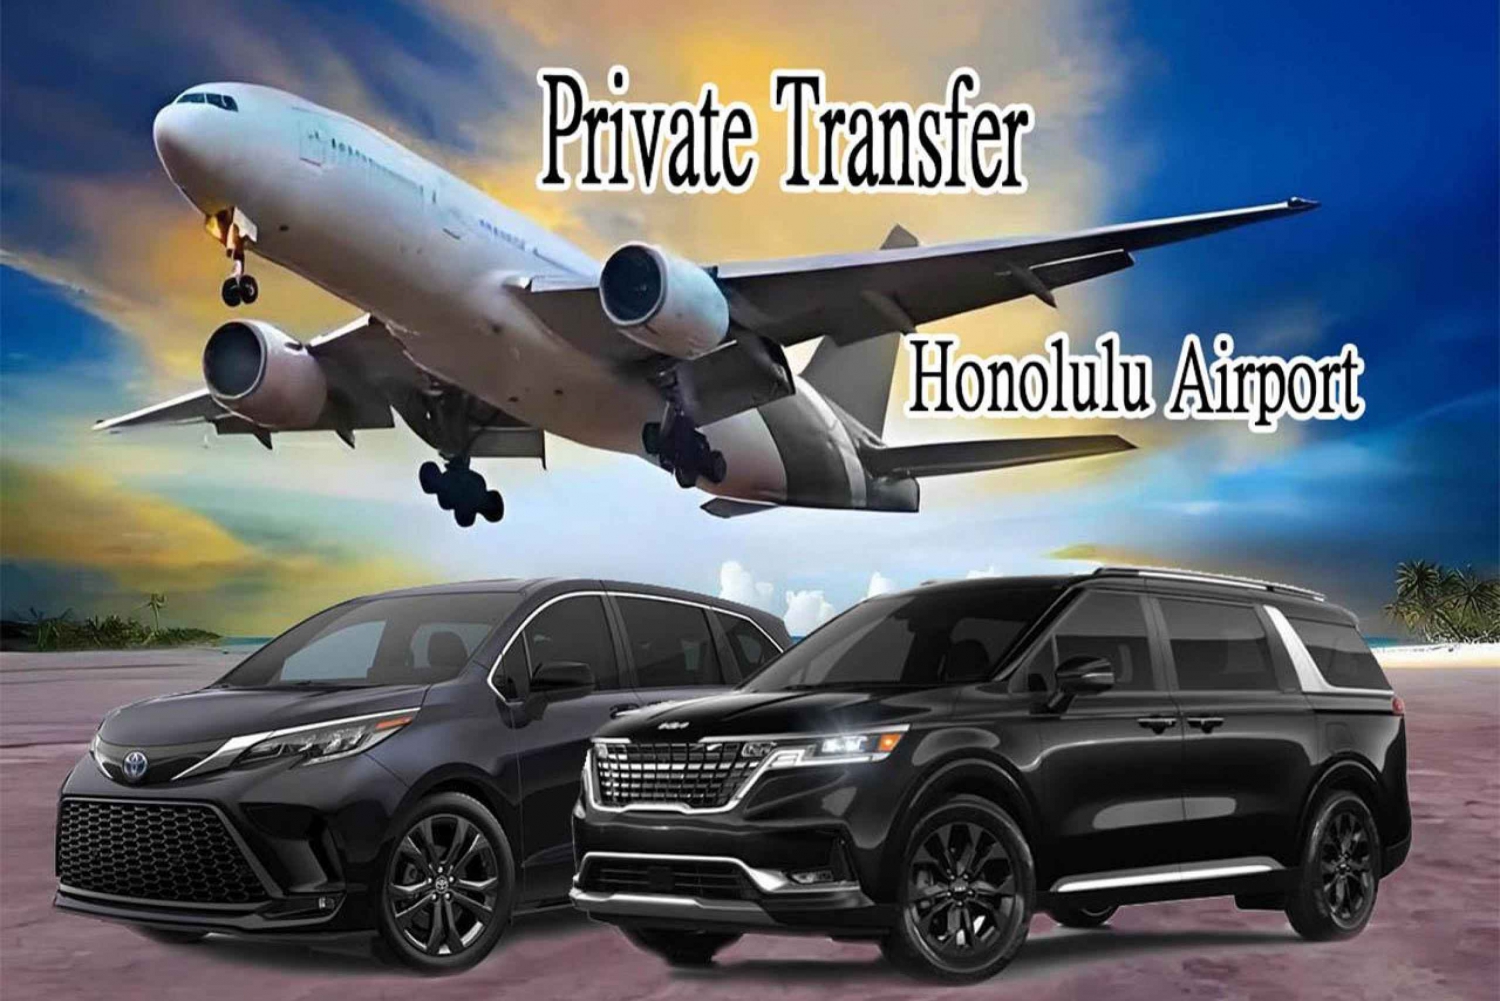 【Chegada】Aeroporto de Honolulu -Traslado particular para Waikiki